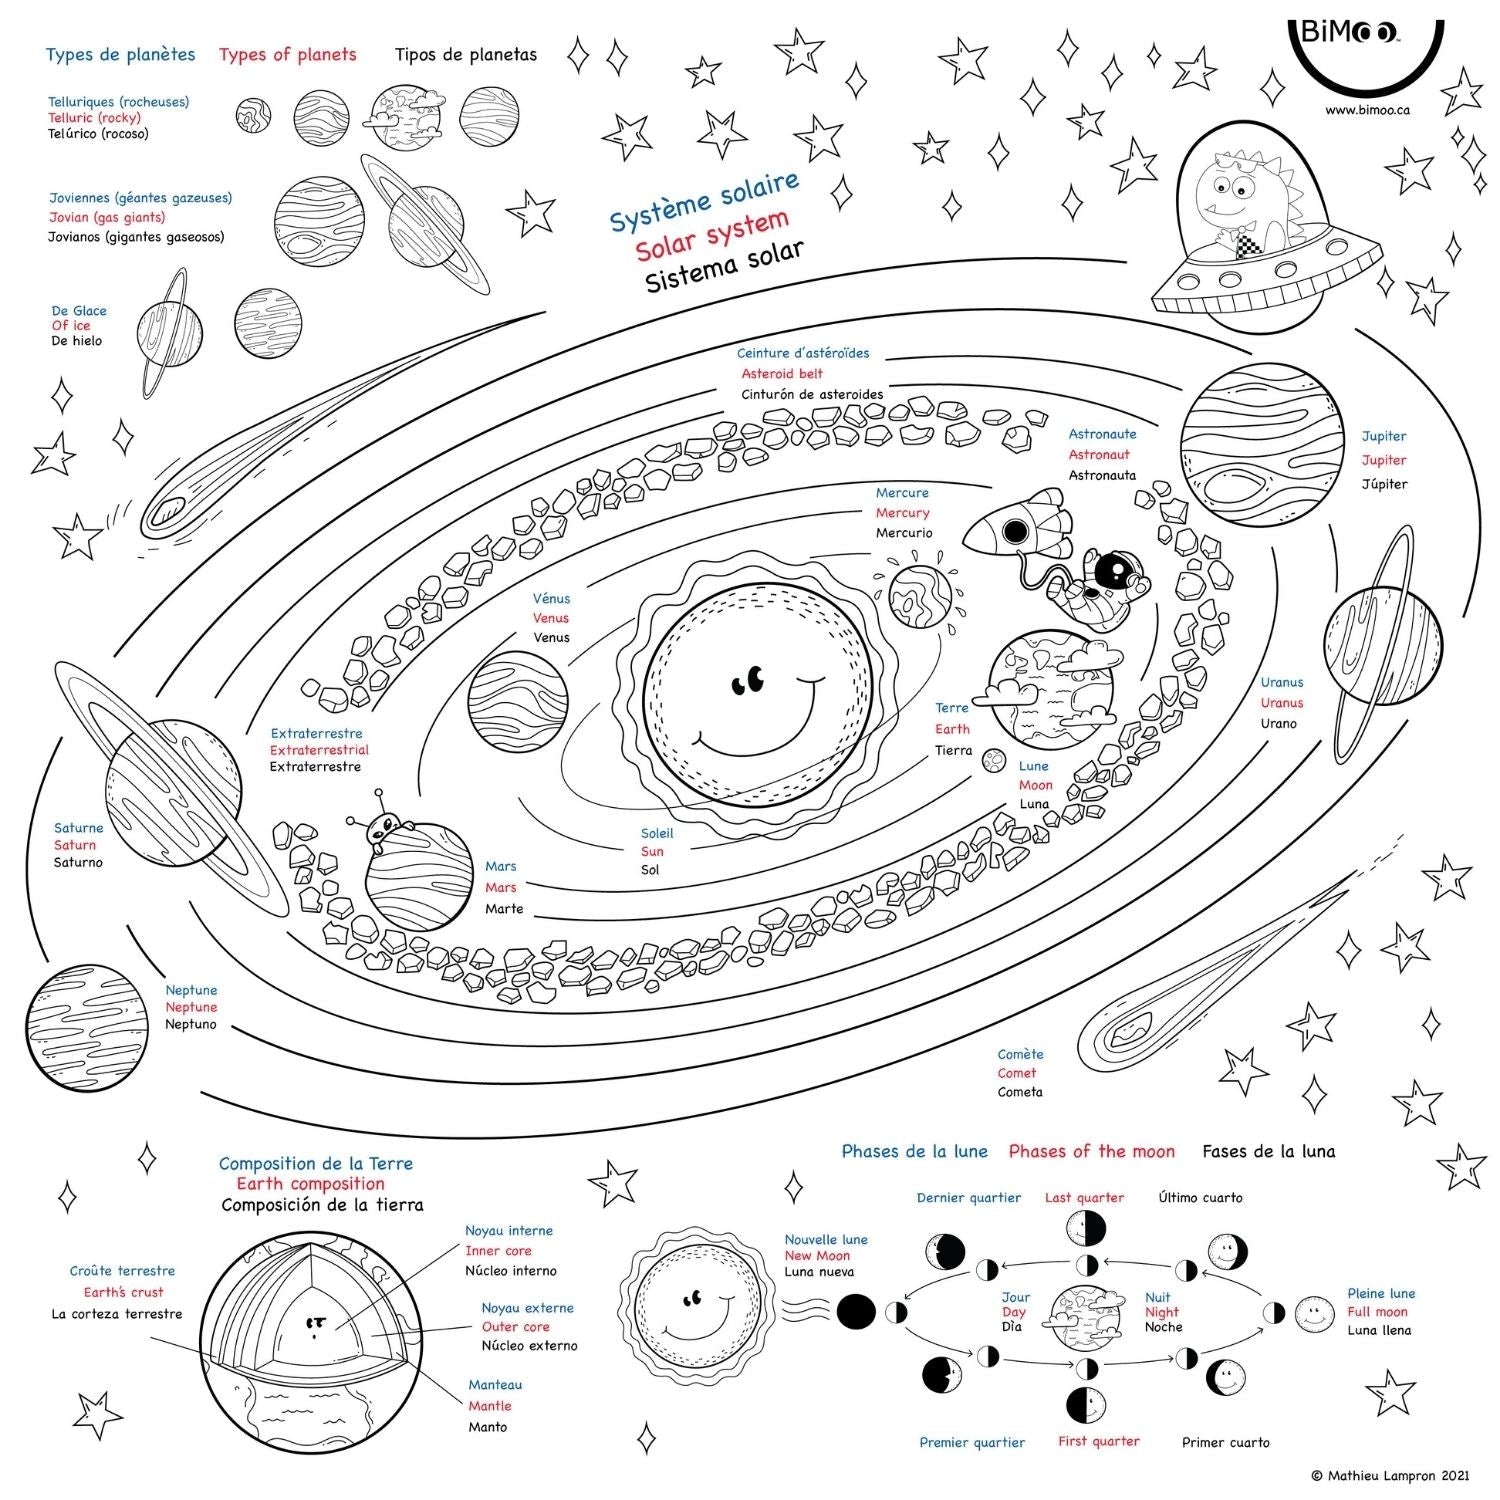 planets solar system tablecloth design planètes système solaire nappe a colorier bimoo 45x45in